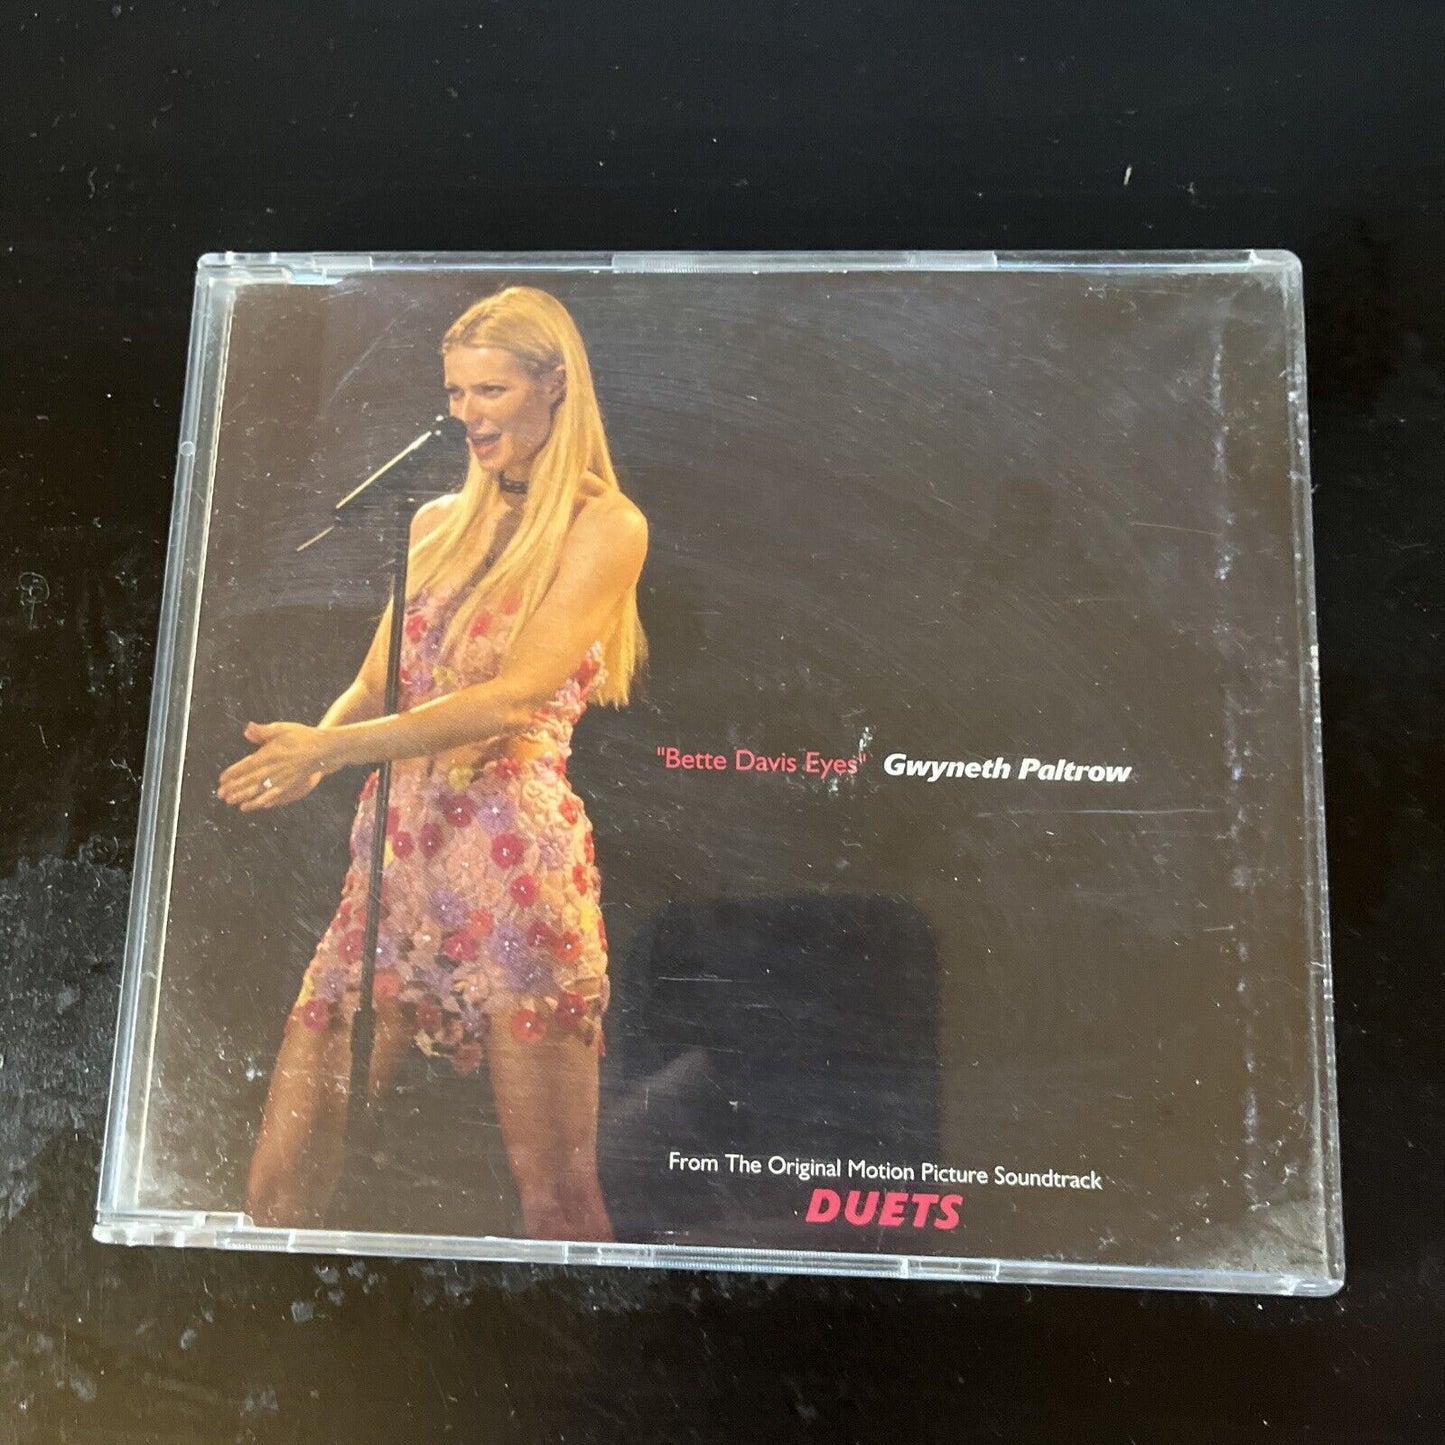 Gwyneth Paltrow - Bette Davis Eyes (CD, 2000) 3 Track Single